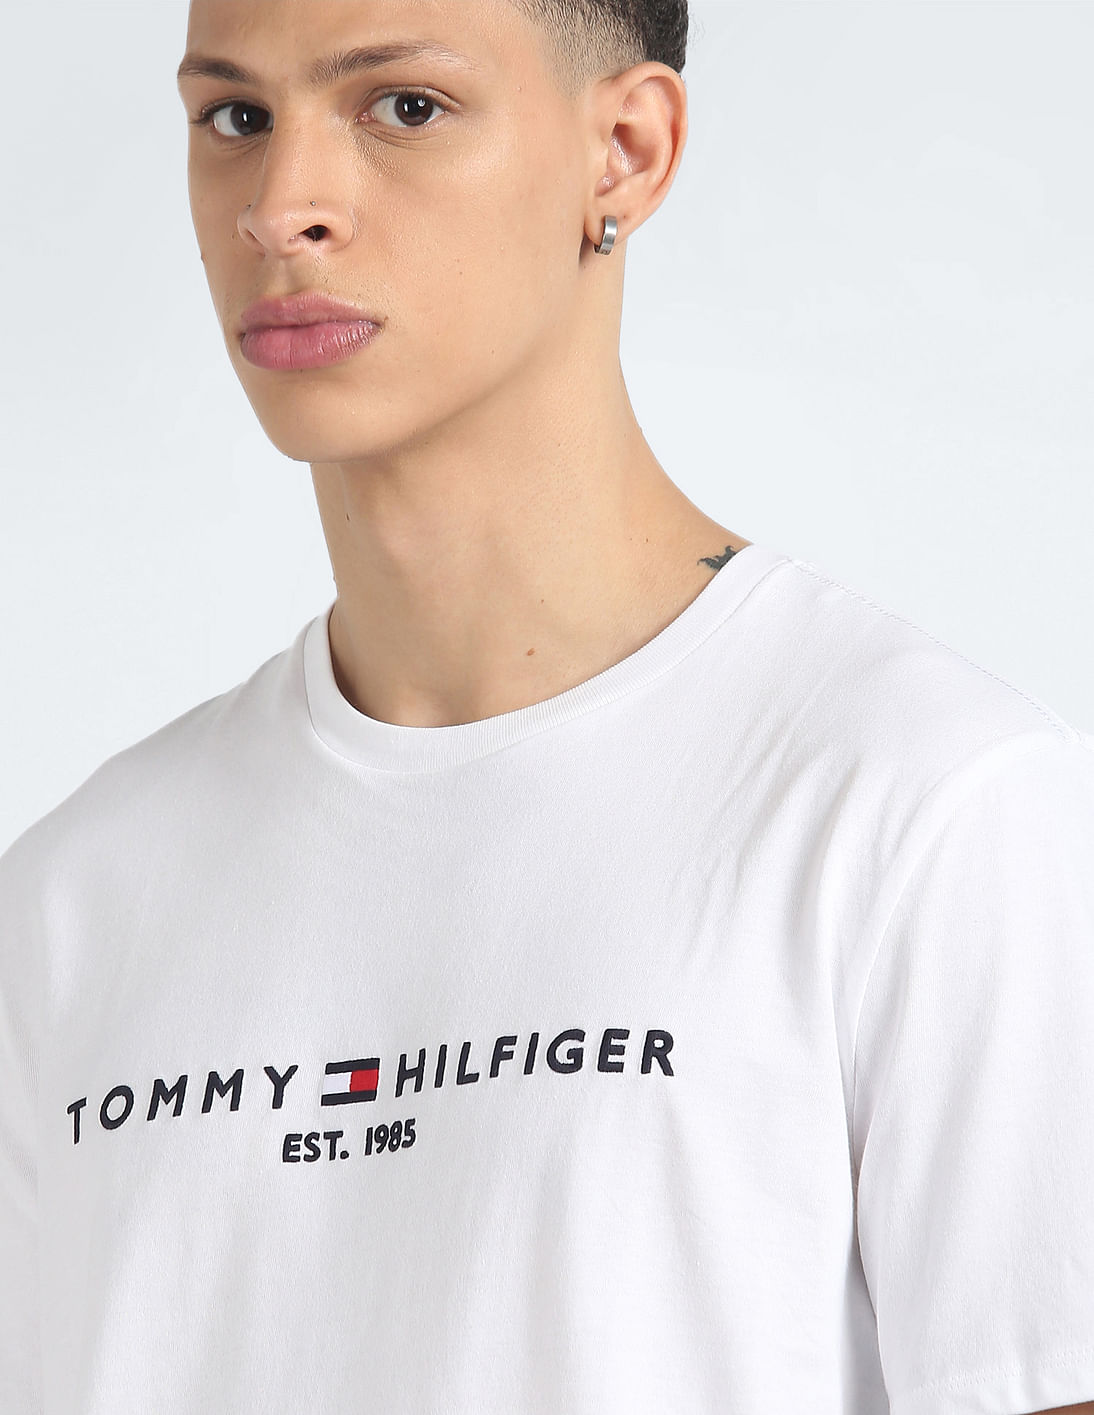 Tommy Hilfiger Fit Embroidered Logo T-Shirt Buy Regular